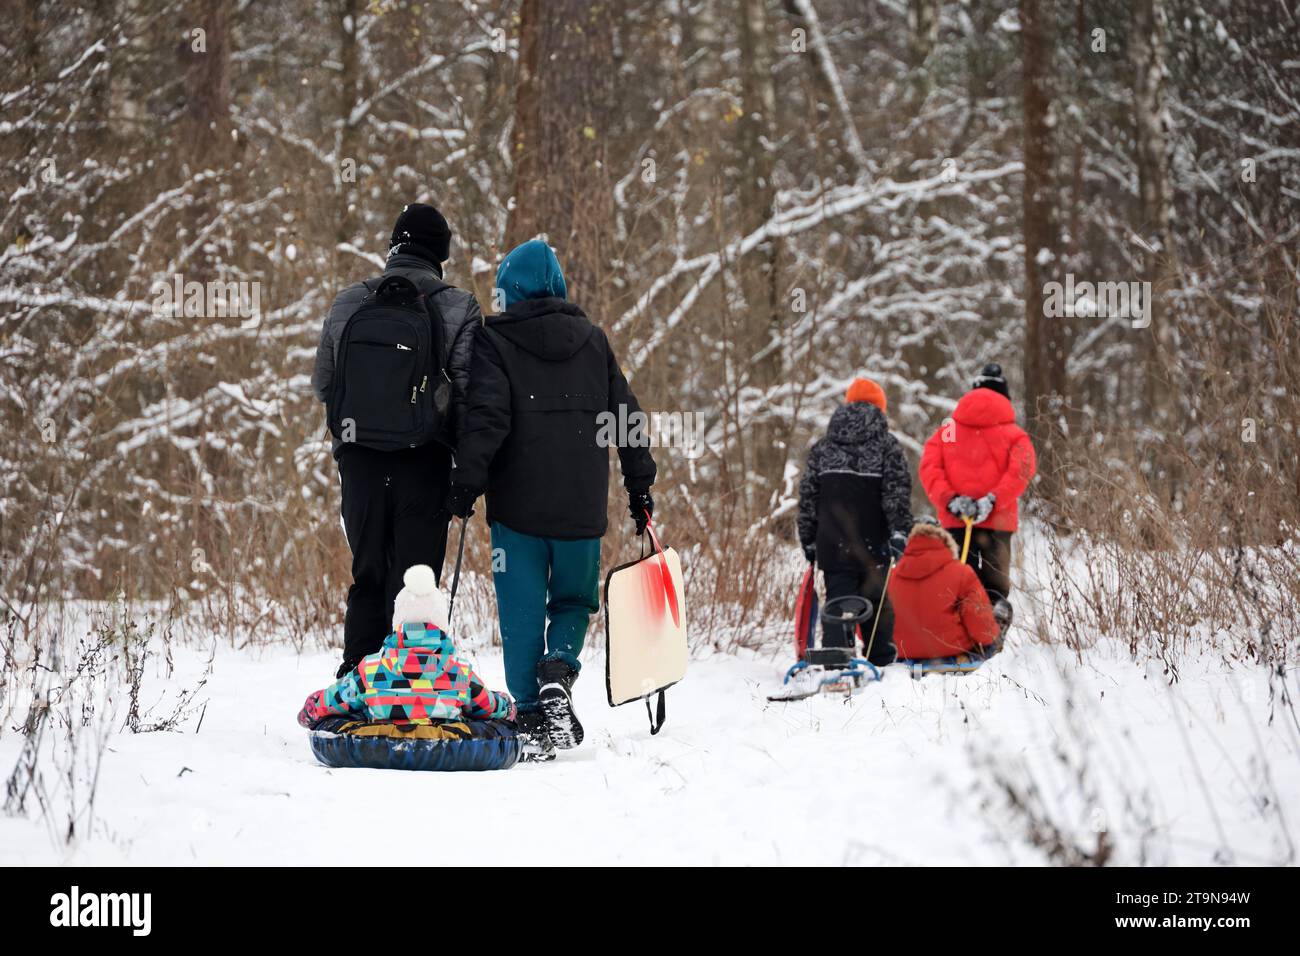 Loisirs en famille sur la nature hivernale, couple avec enfants se rendent au parc pour rouler sur des tubes à neige Banque D'Images